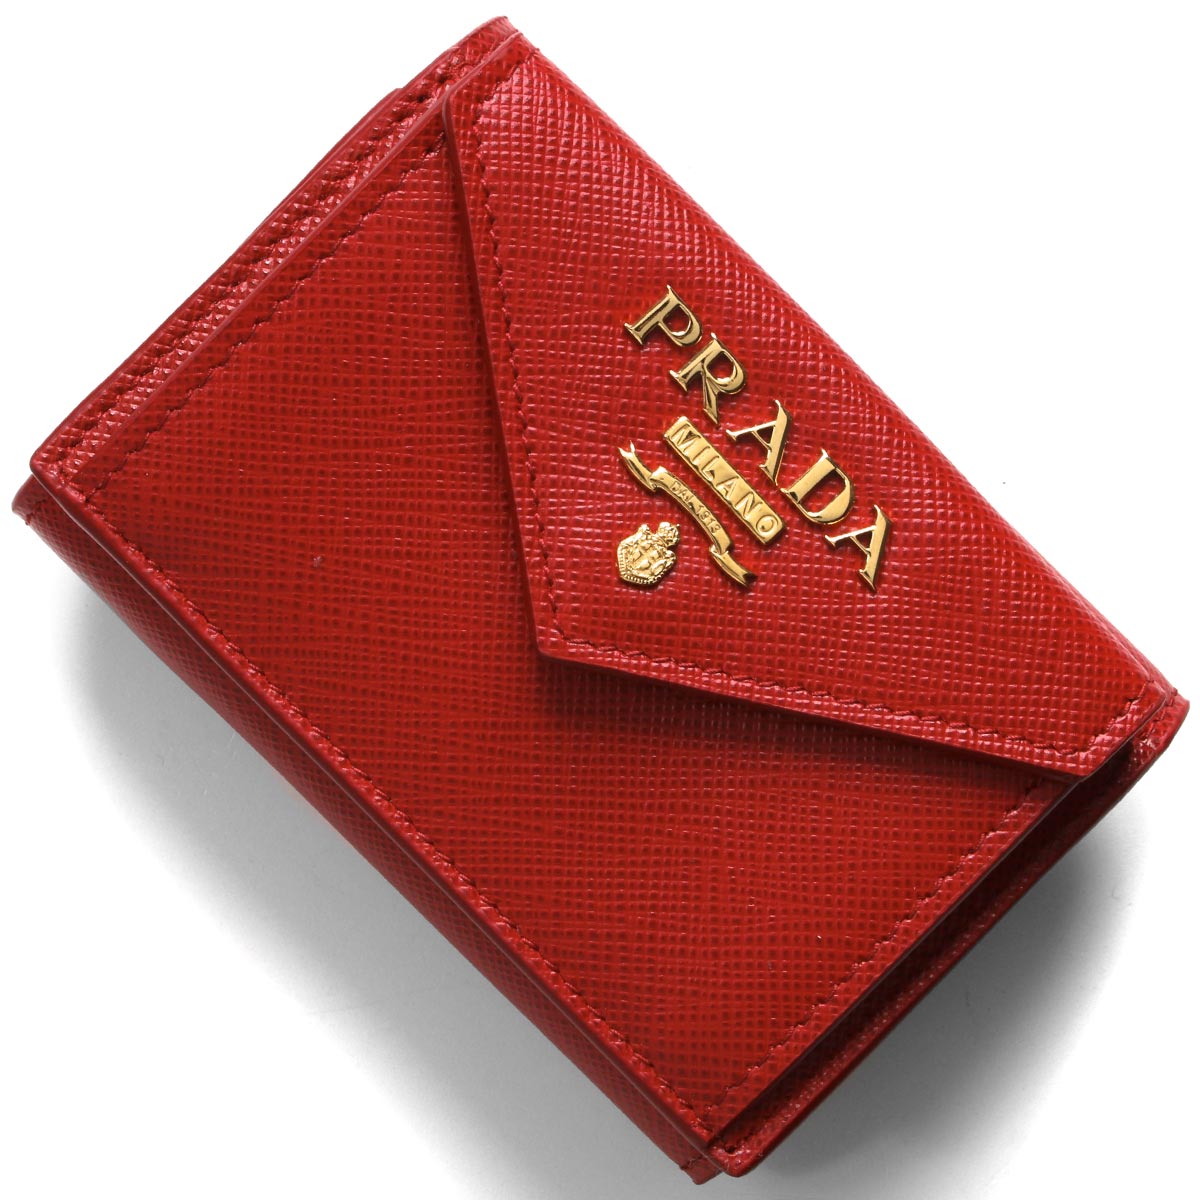 【新品未使用】PRADA プラダ 三つ折り ミニ財布 プラダレッド 赤色